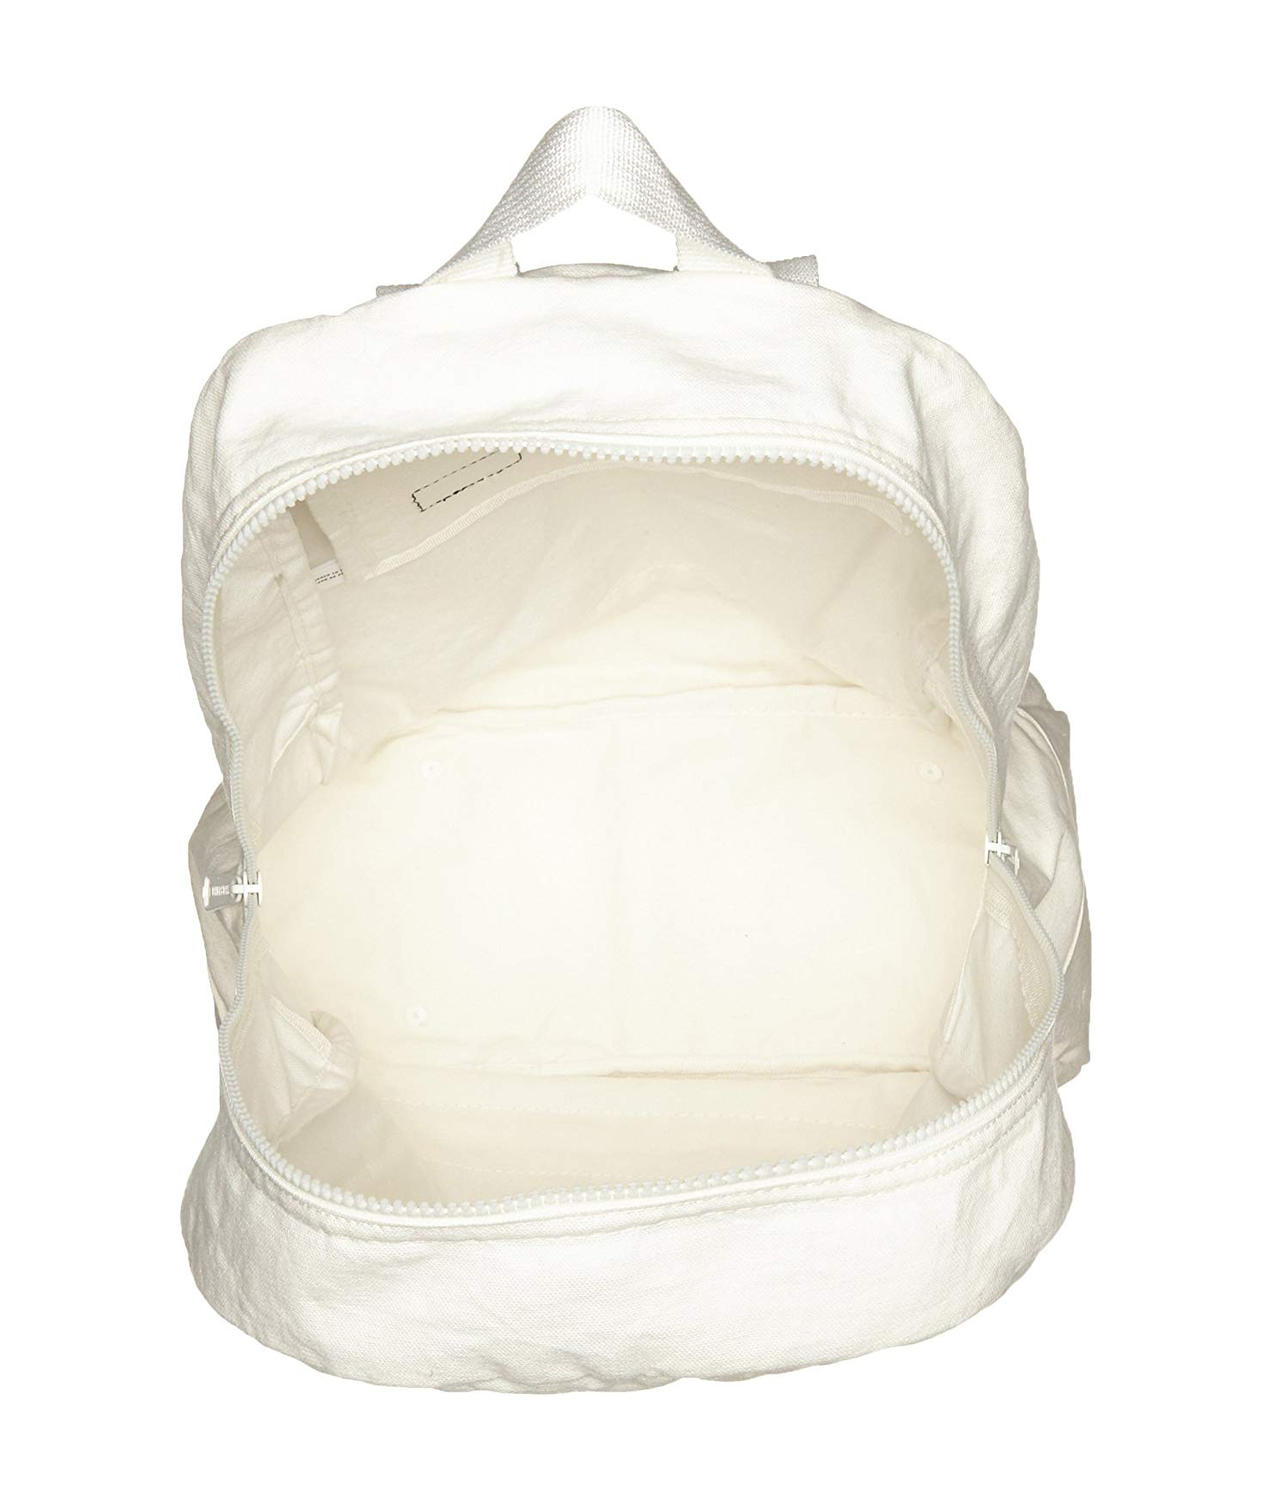 Herschel Backpack Daypack Packable Model, Foldable Blancdeblanc - Shop Online At Best Prices!